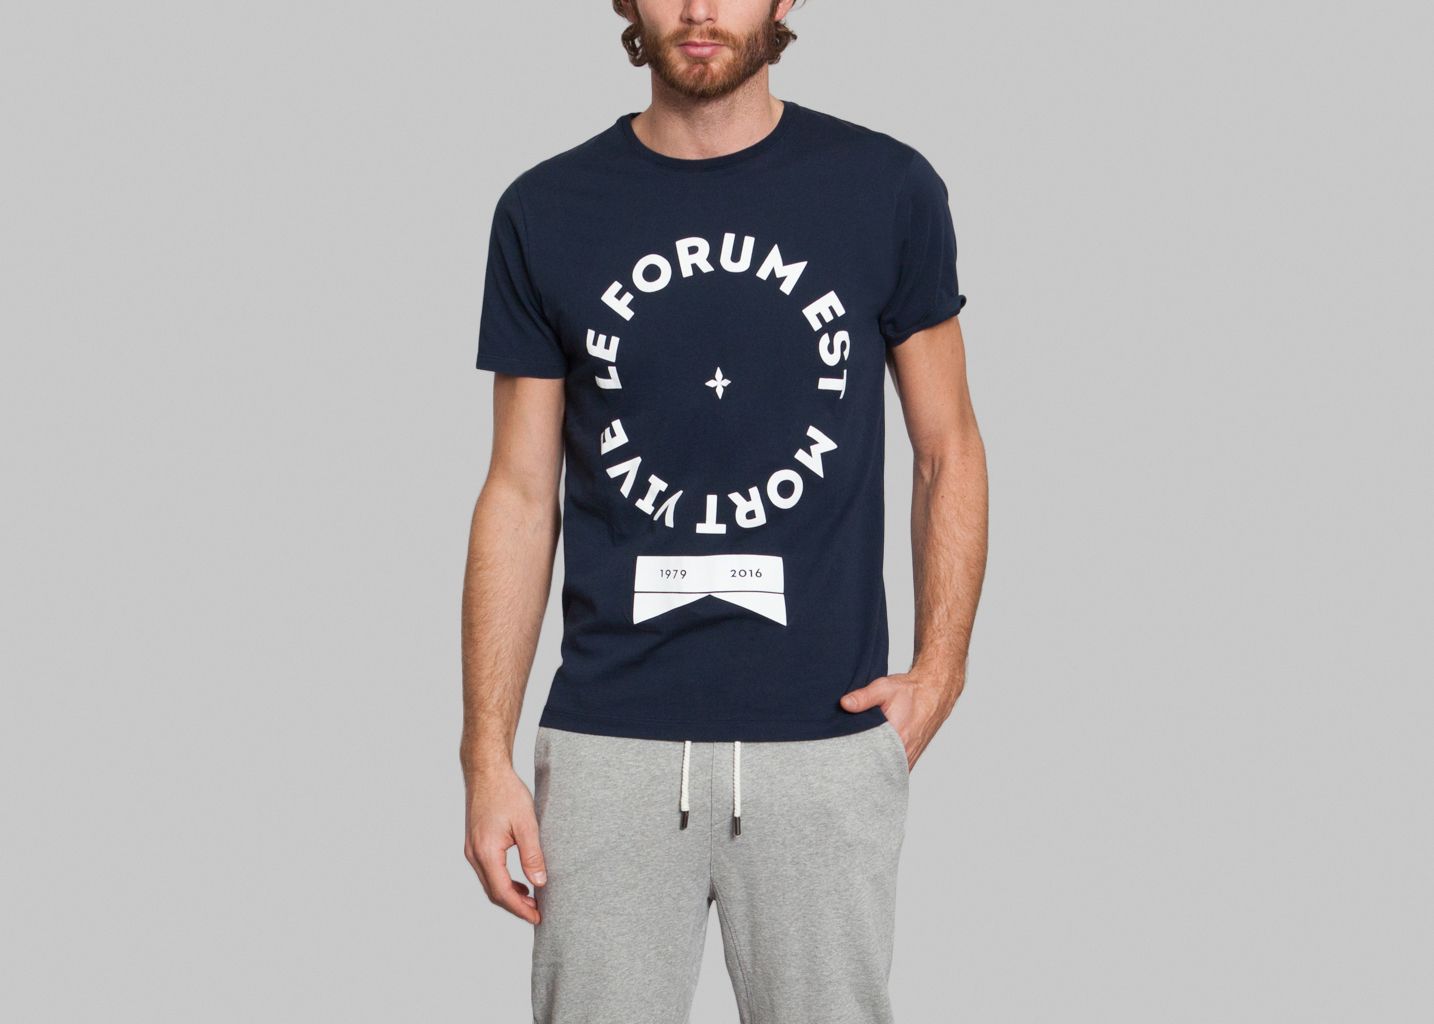 Forum T-shirt - Commune de Paris